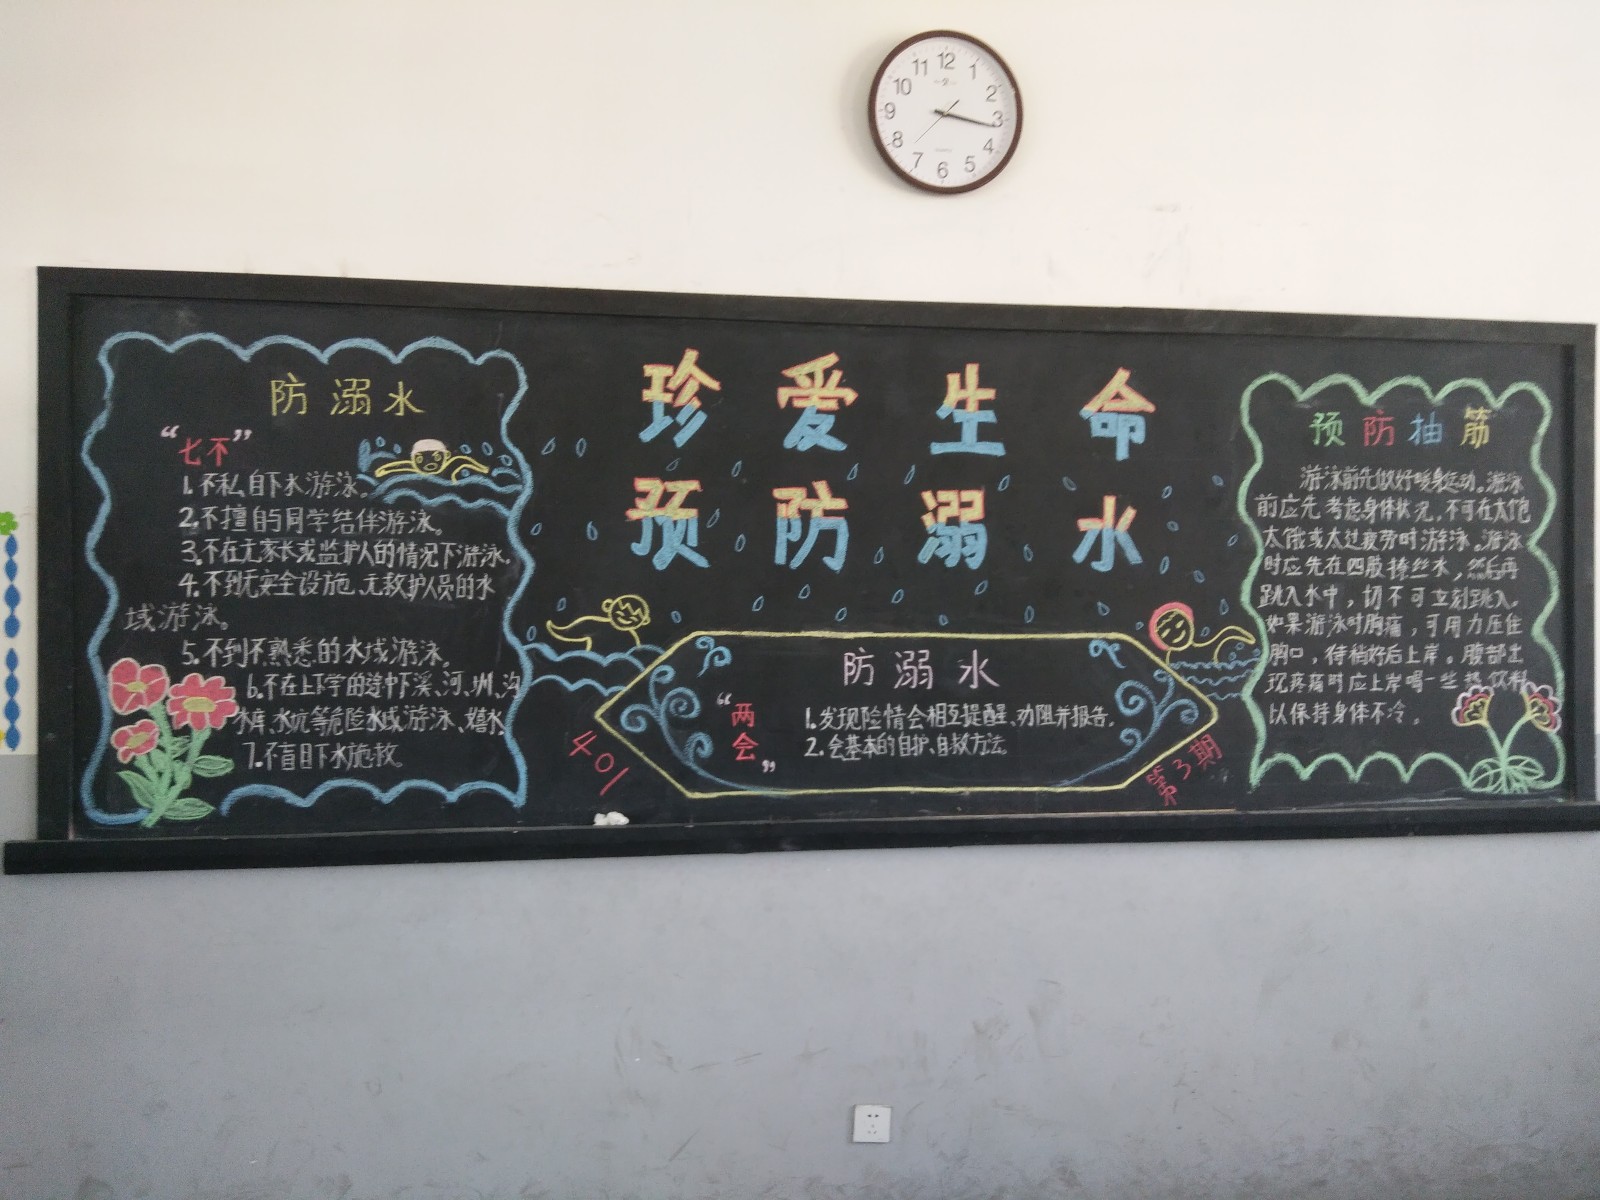 黄山市祁门县实验学校开展了以"珍爱生命 预防溺水"为主题的黑板报